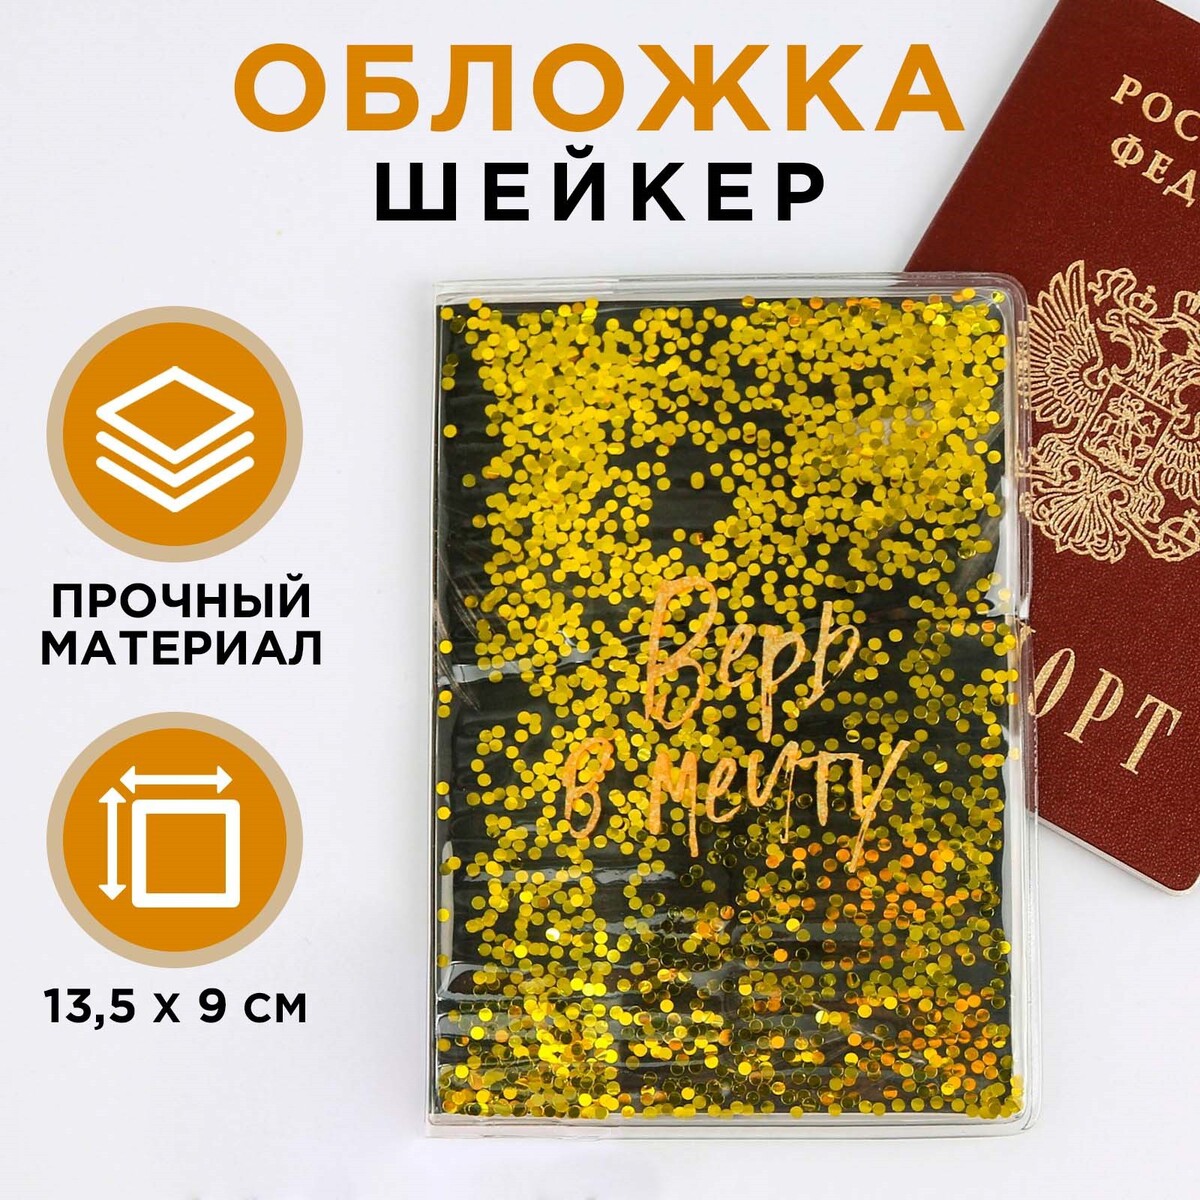 фото Обложка-шейкер для паспорта no brand